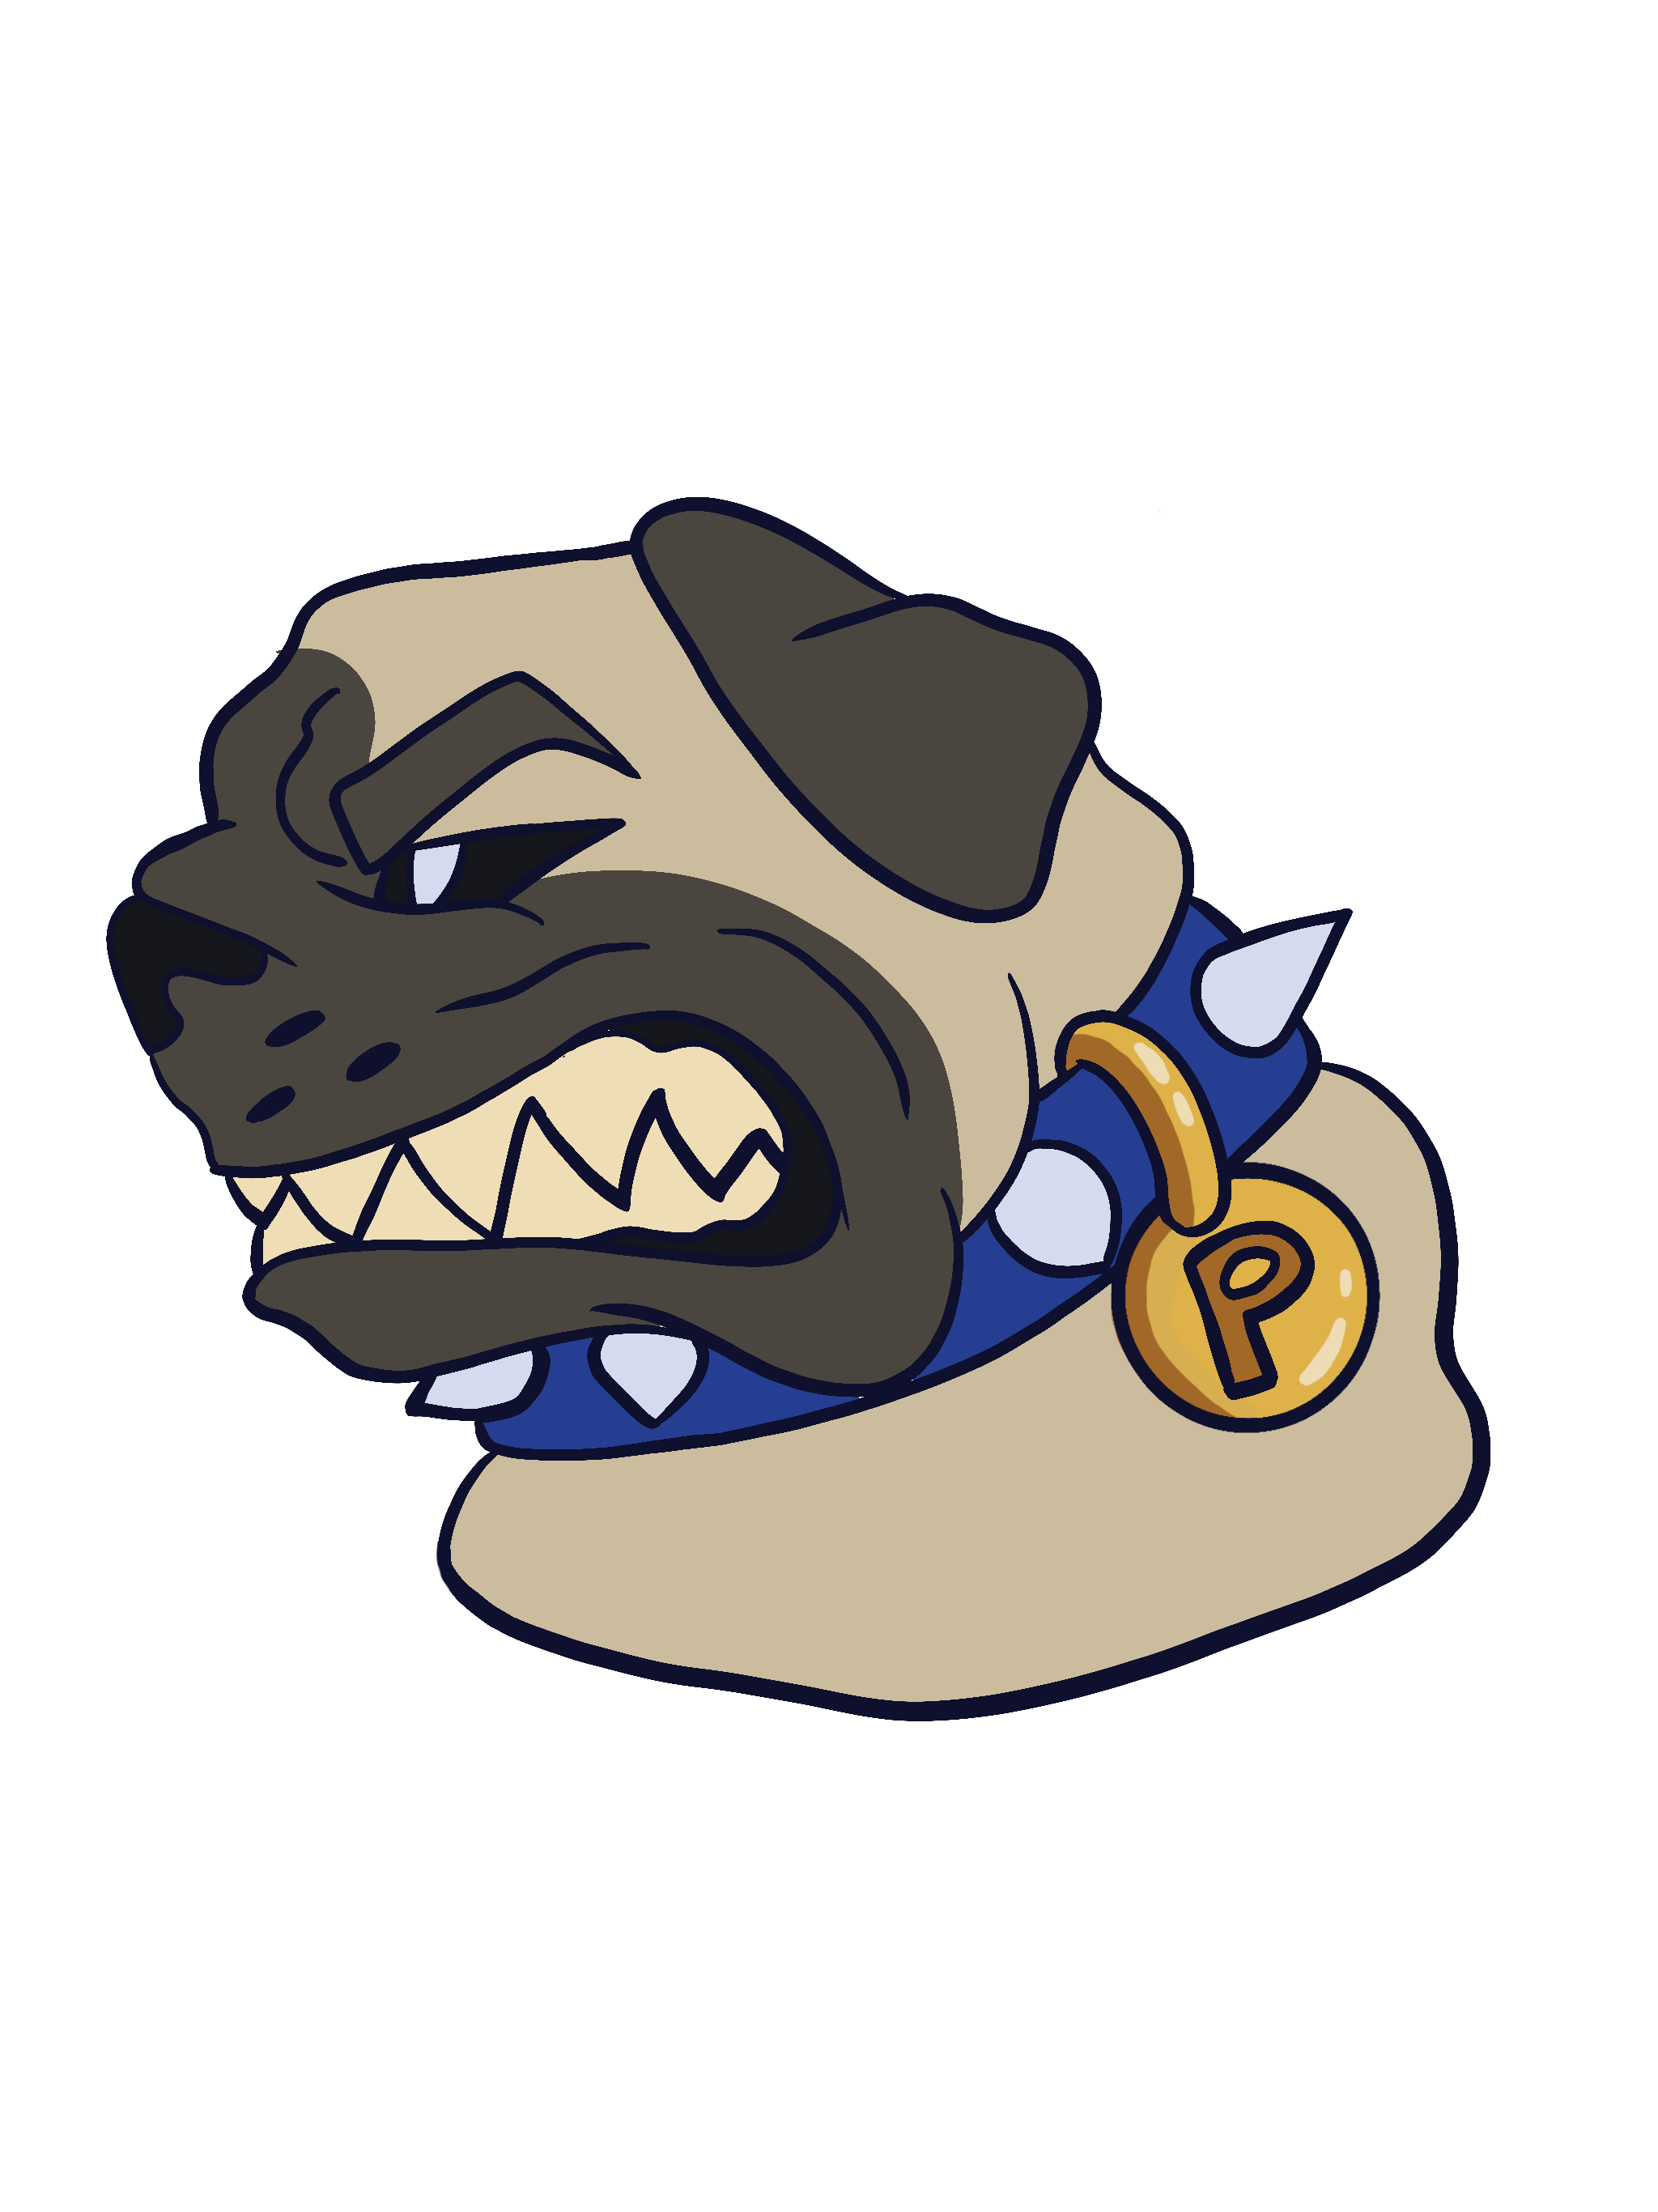 Pug Mascot Design